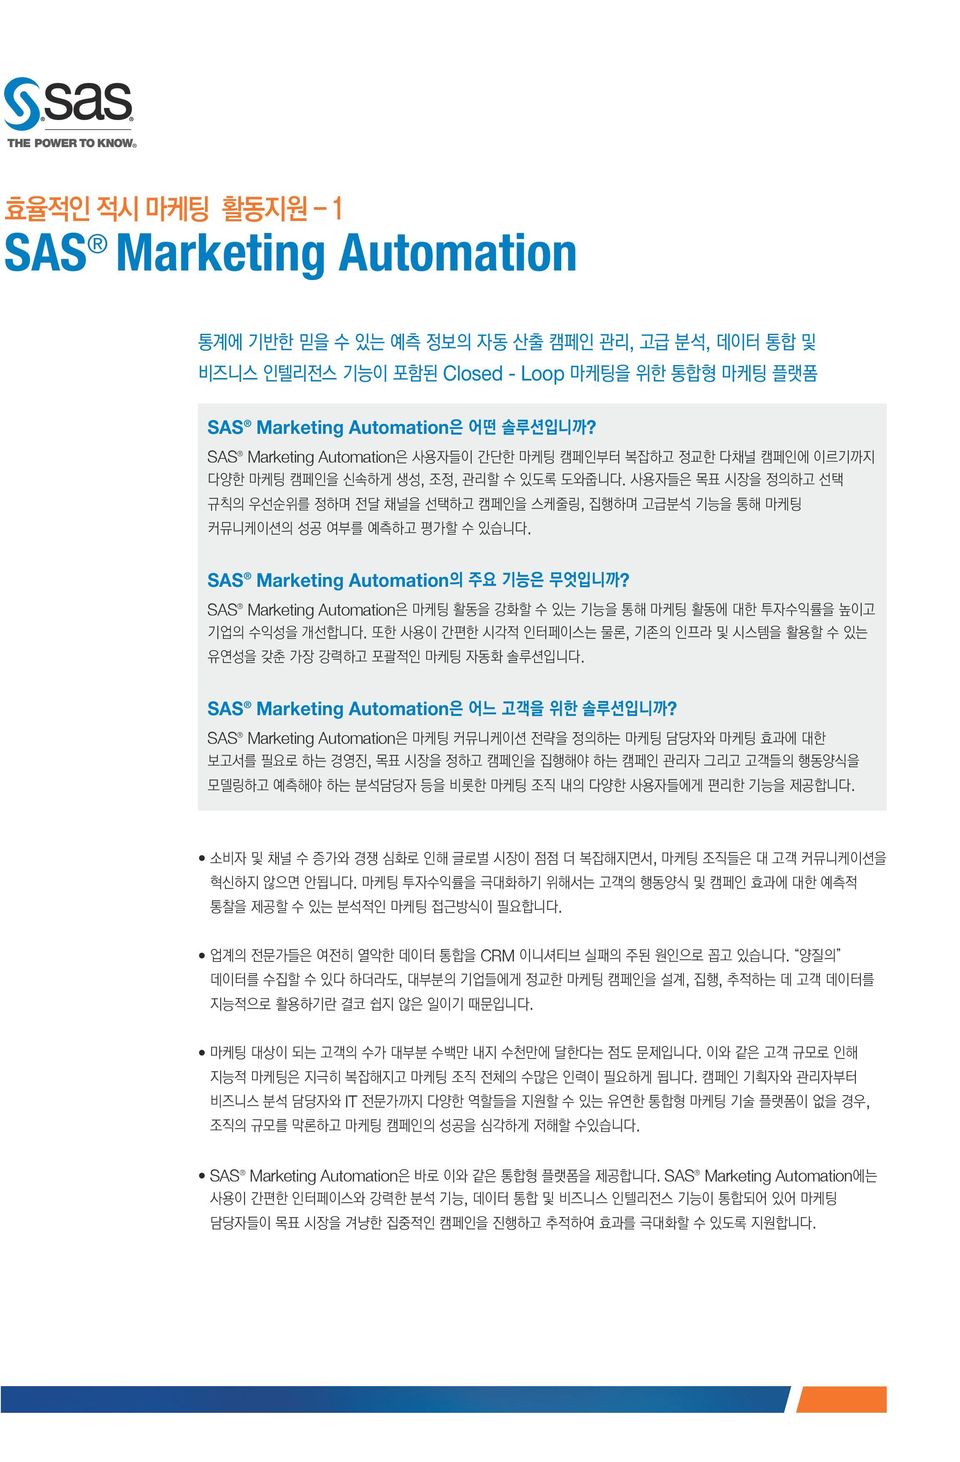 SAS Marketing Automation,,.,. SAS Marketing Automation? SAS Marketing Automation.,. SAS Marketing Automation? SAS Marketing Automation,.